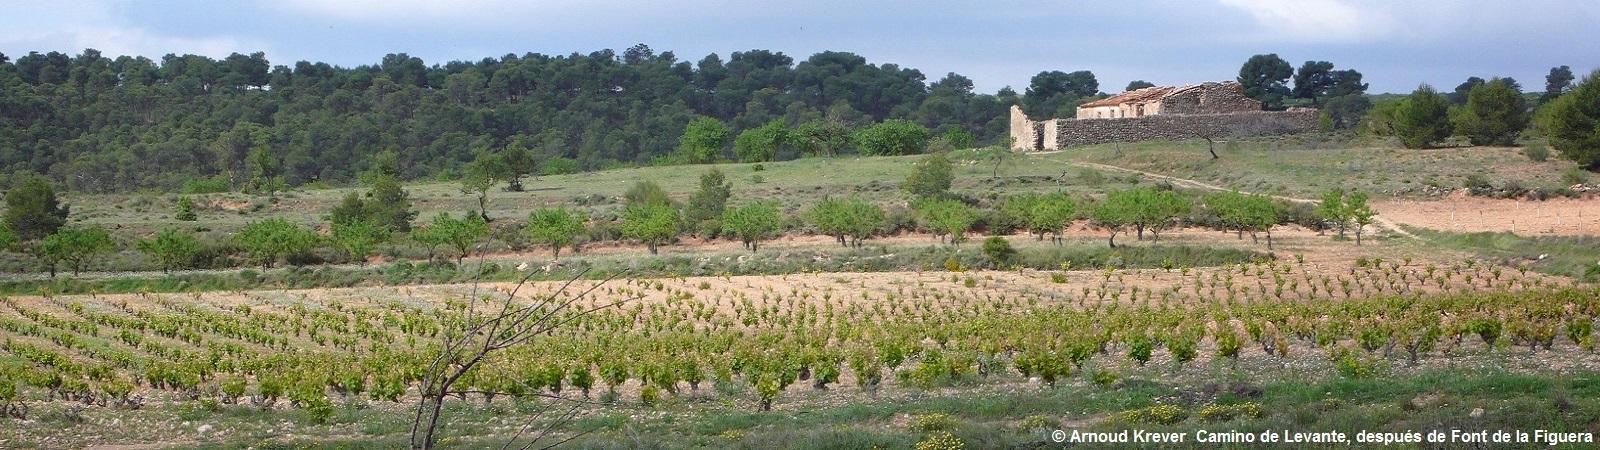 Levante (273) Voorbij La Font de la Figuera, wijngaard